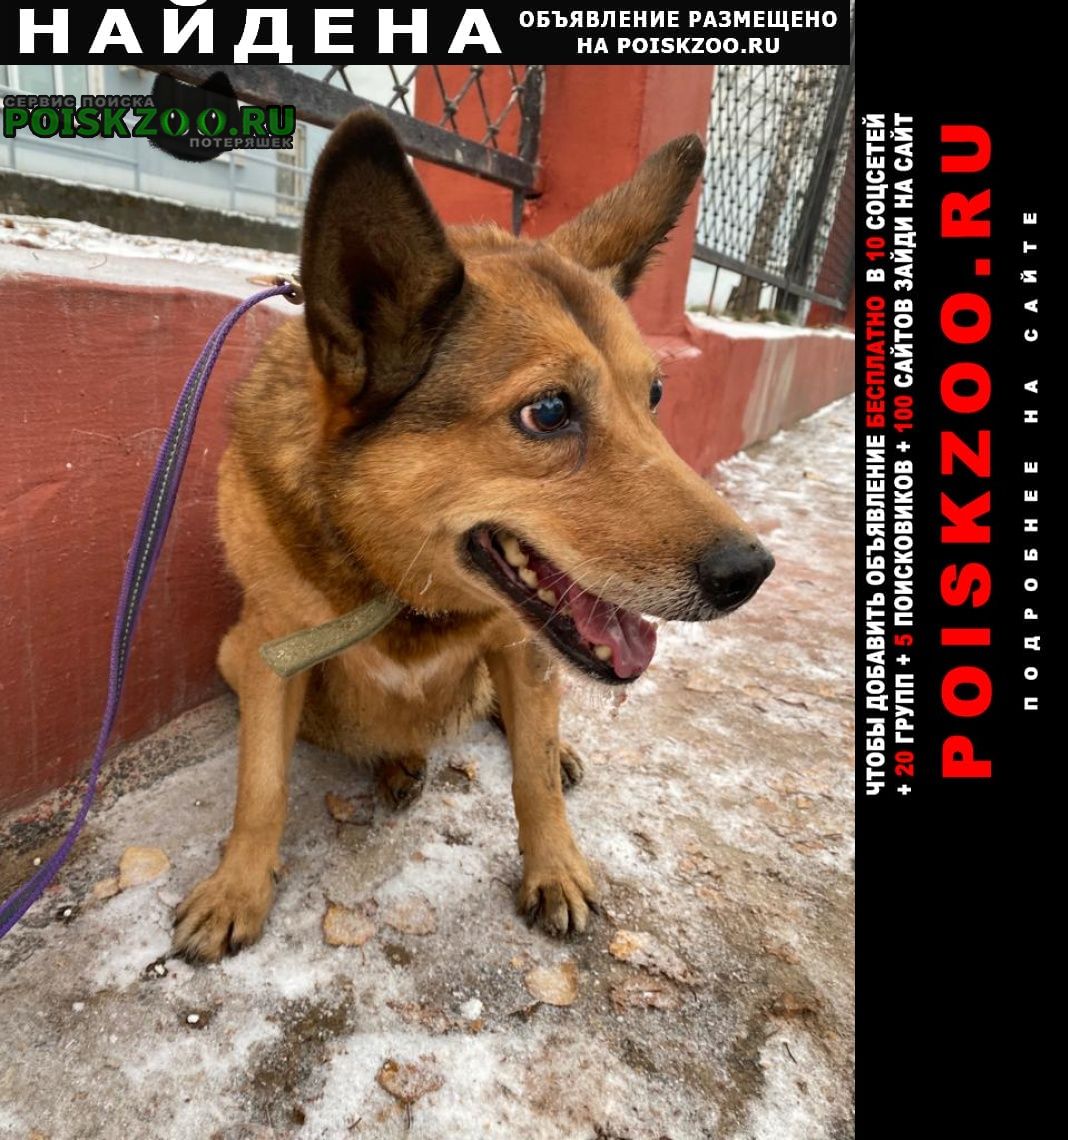 Найдена собака девочка рыжая в ошейнике цвета хаки. Пермь